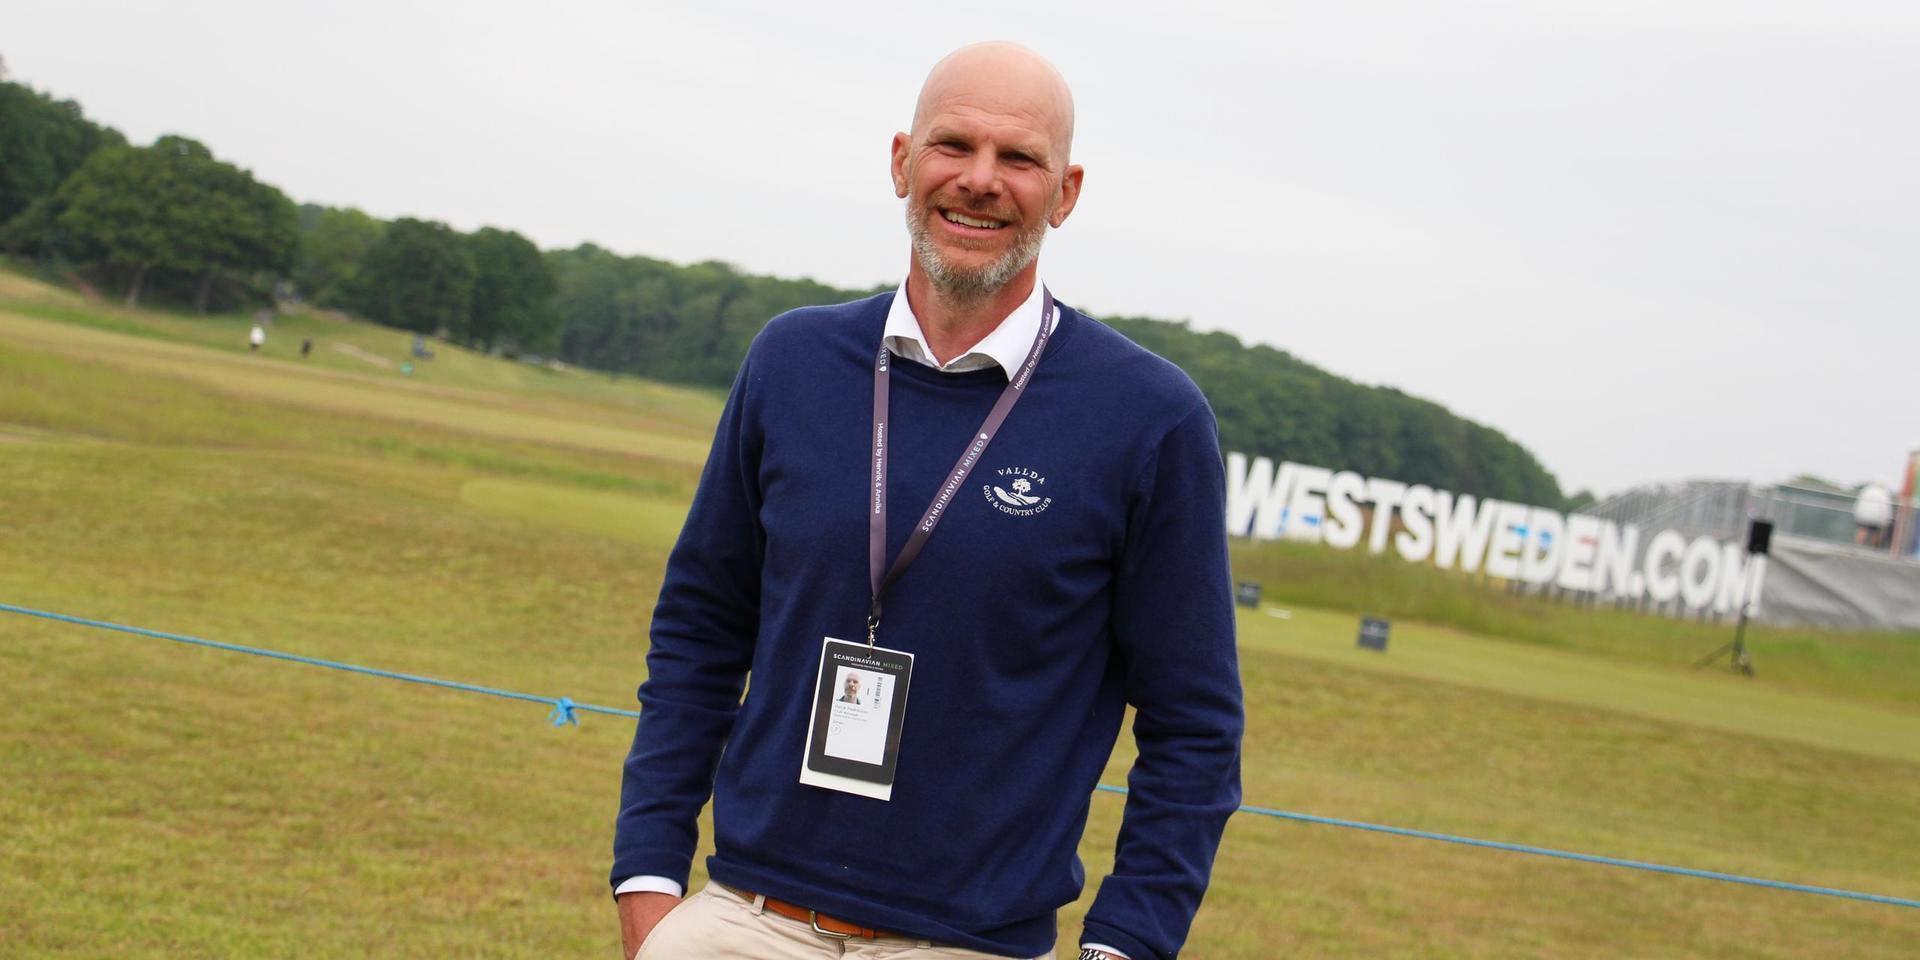 Klubbchefen Patrik Fredriksson är stolt över att kunna stå värd för den stora golftävlingen.